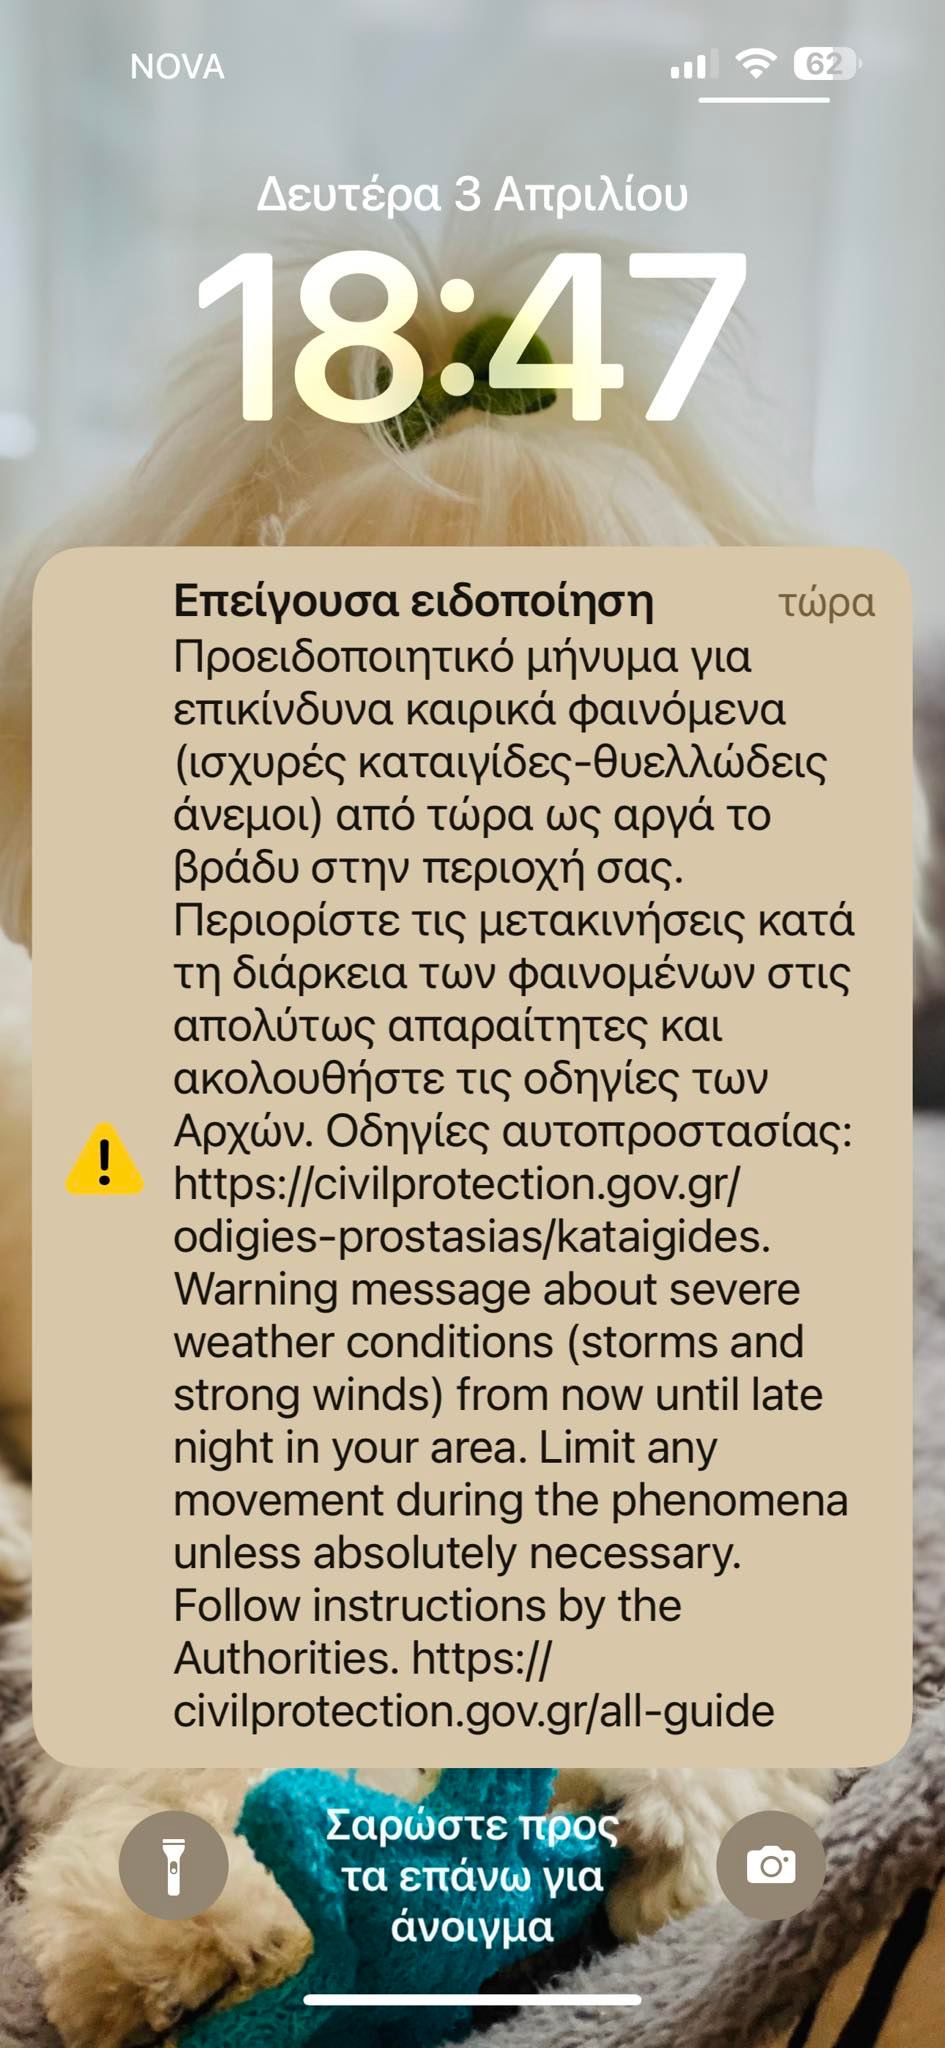 Ηχησε πάλι το 112 προειδοποιώντας για επικίνδυνα καιρικά φαινόμενα τις επόμενες ώρες στη Θεσσαλονίκη